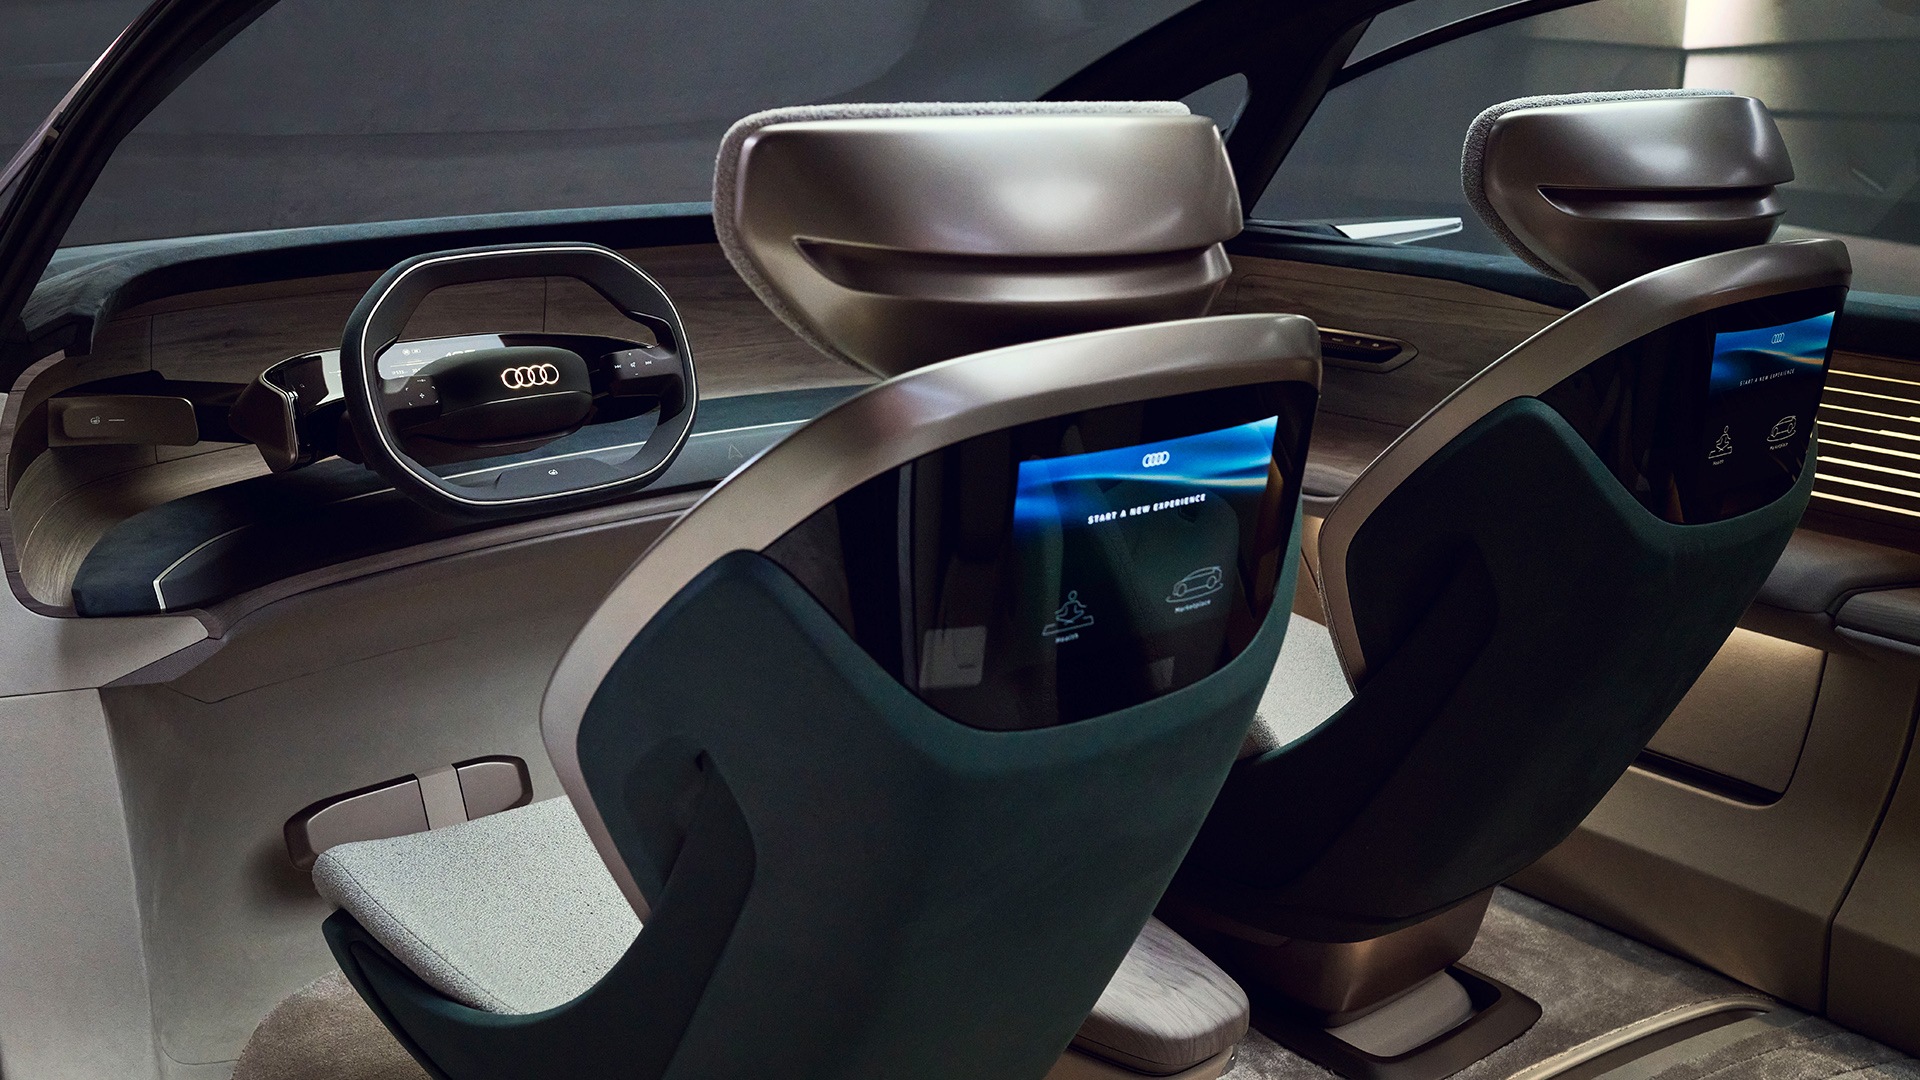 Sedeži konceptnega vozila Audi urbansphere.